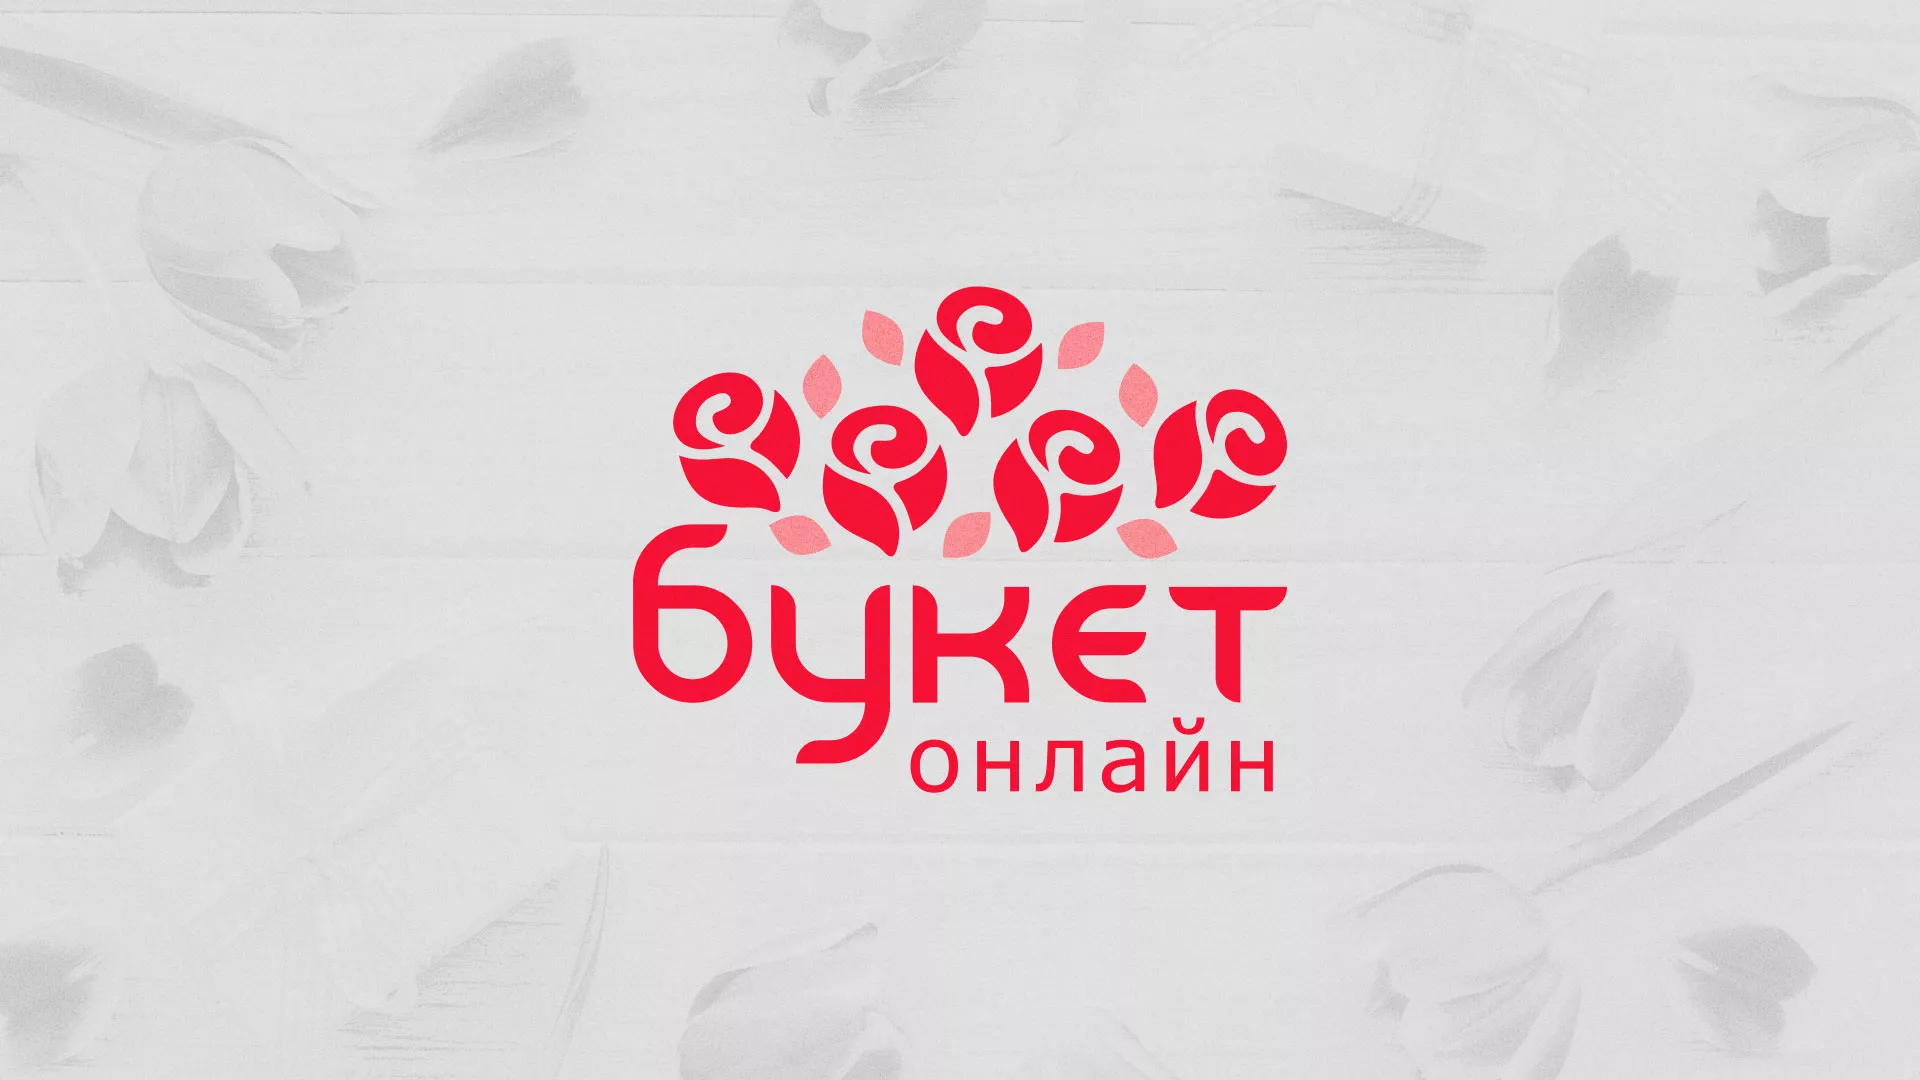 Создание интернет-магазина «Букет-онлайн» по цветам в Петровске